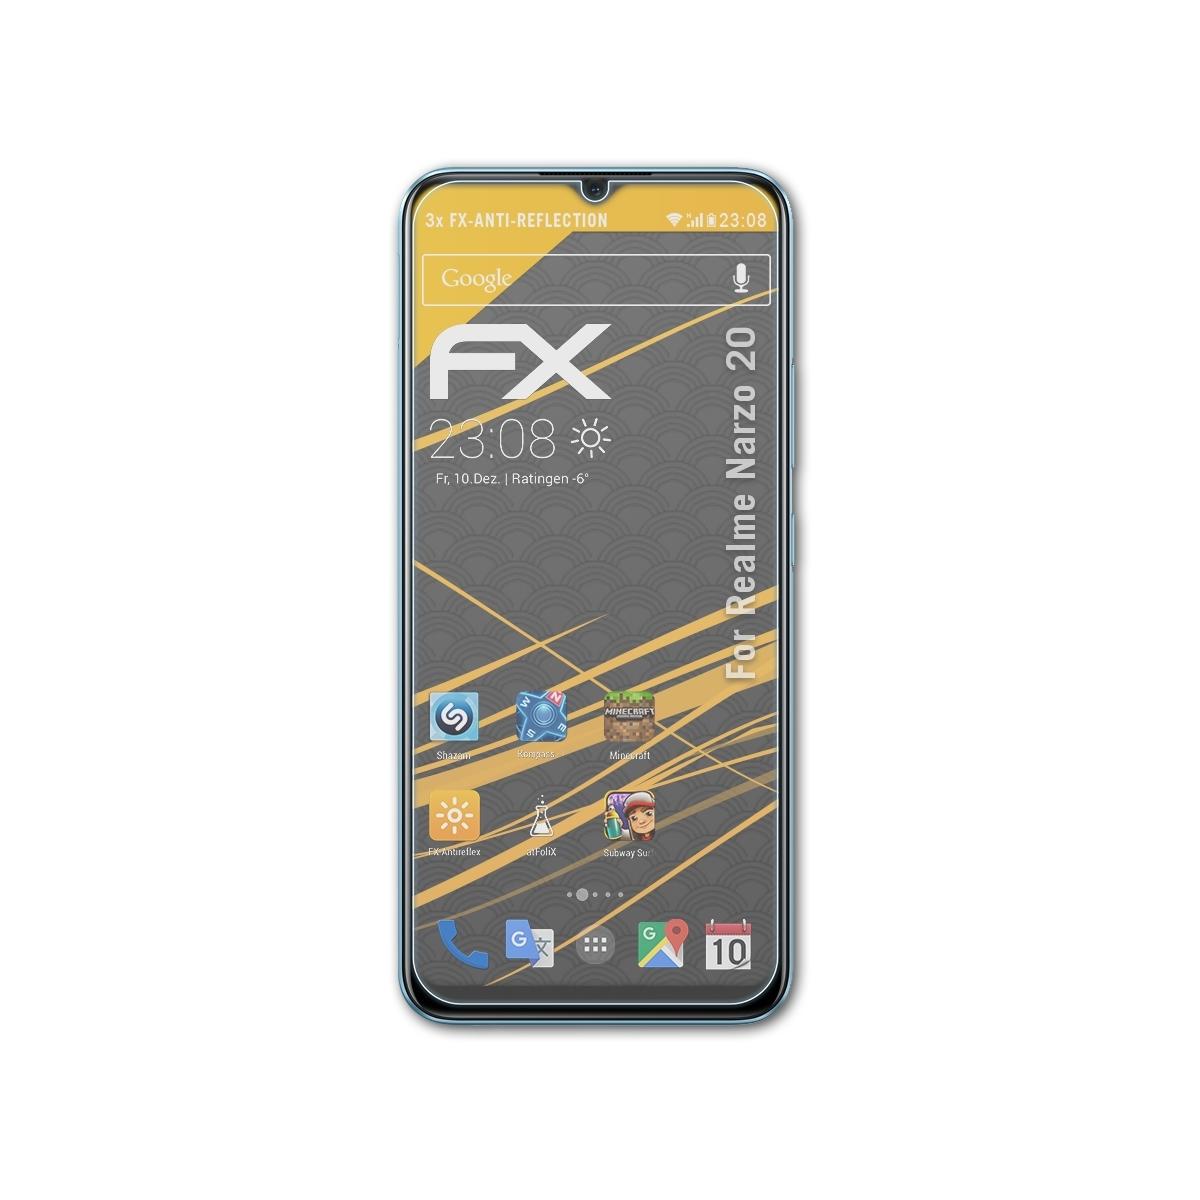 FX-Antireflex Narzo Realme ATFOLIX 20) Displayschutz(für 3x